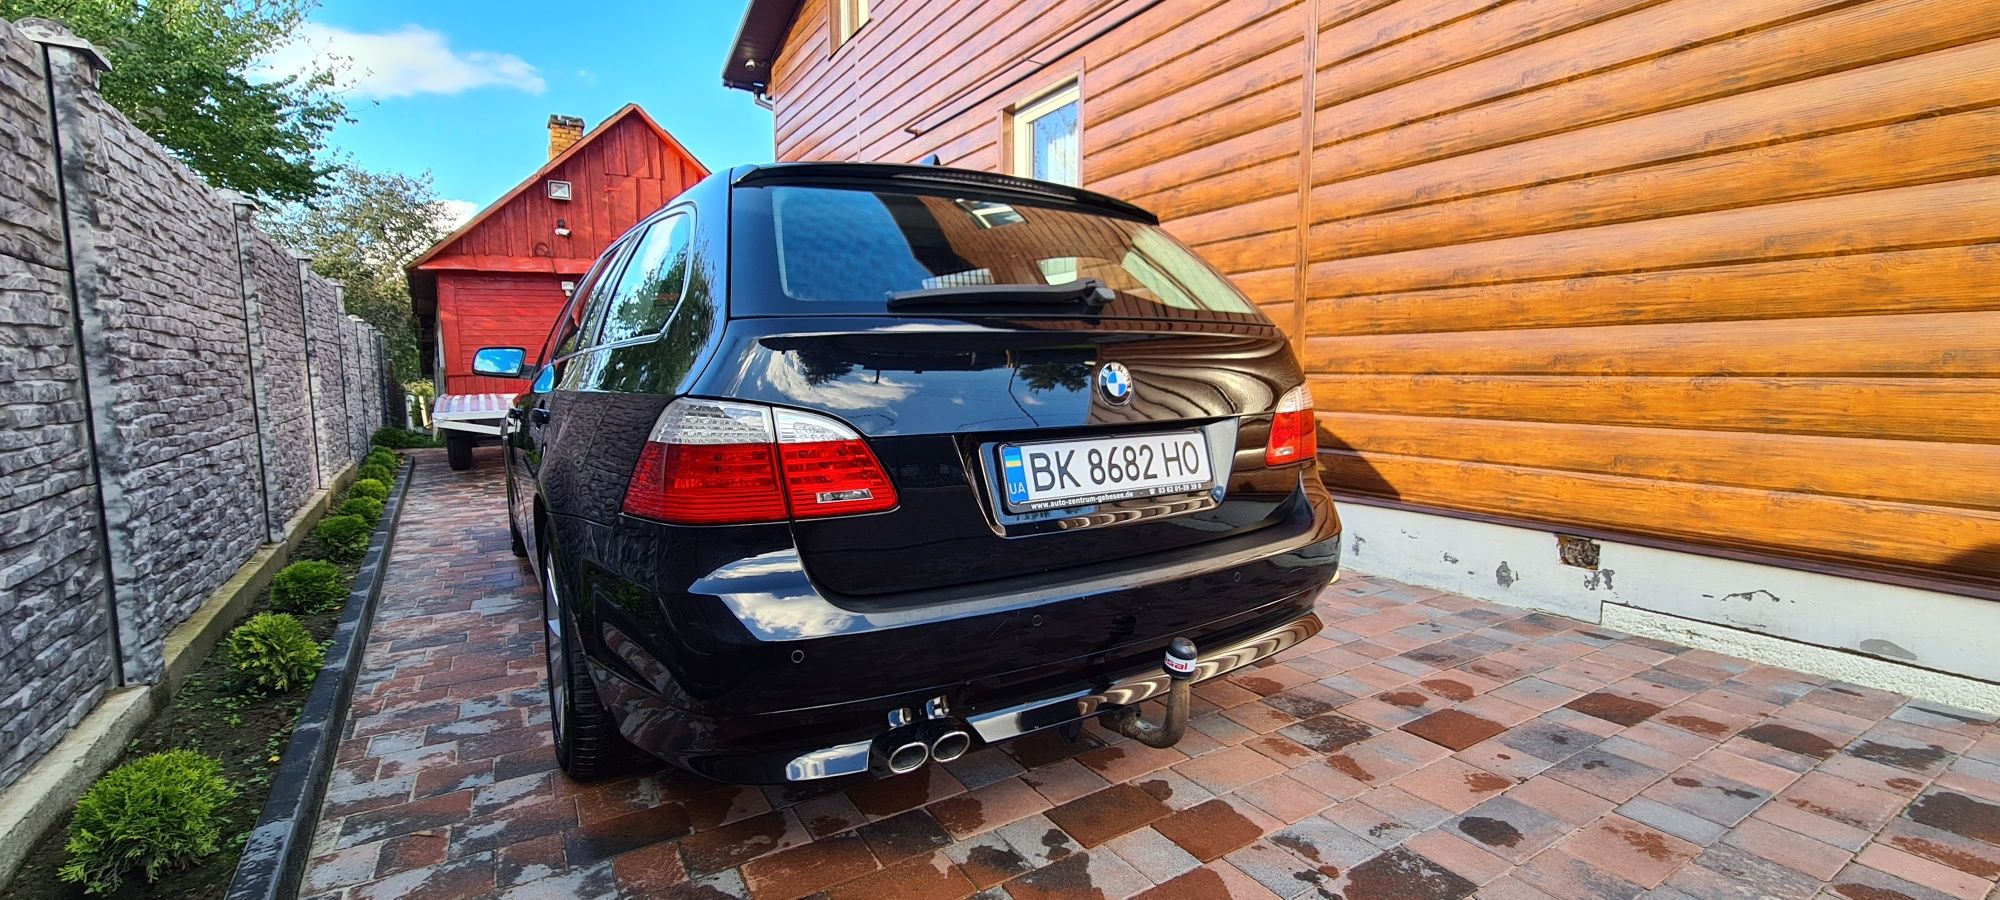 Продам BMW E 61 пригнану з Німеччини в ідеальному стані , обслужену